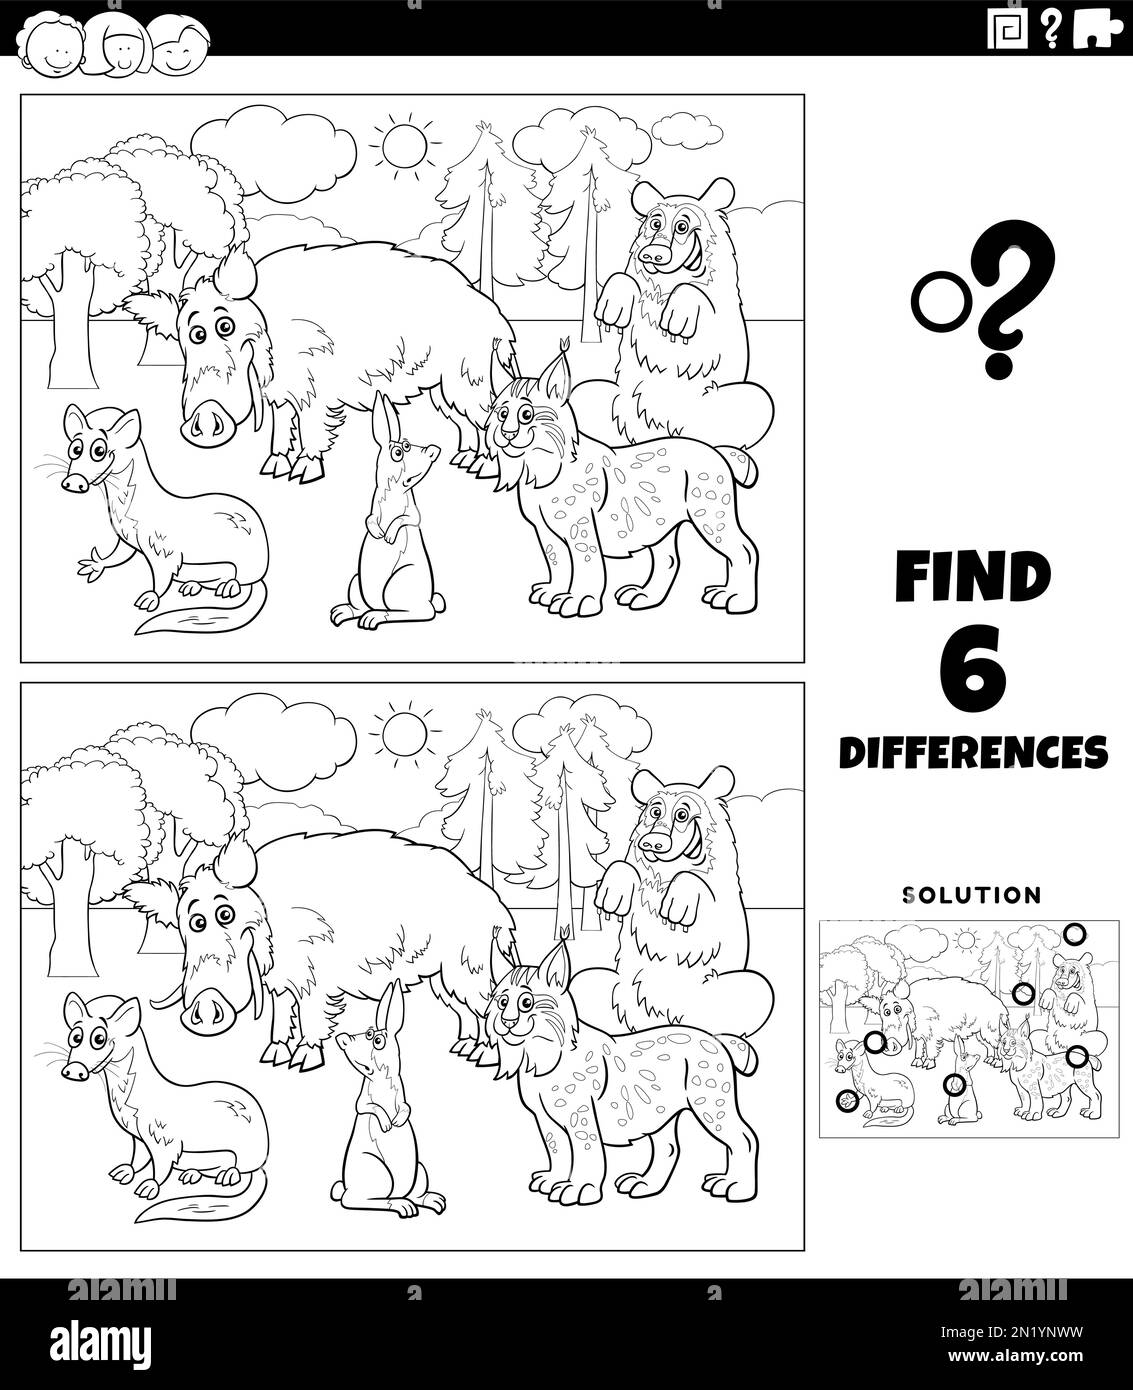 Schwarz-weiße Zeichentrickfilme, die zeigen, wie man die Unterschiede zwischen Bildern findet Lernspiel mit einer Seite zum Ausmalen von Wildtierfiguren Stock Vektor